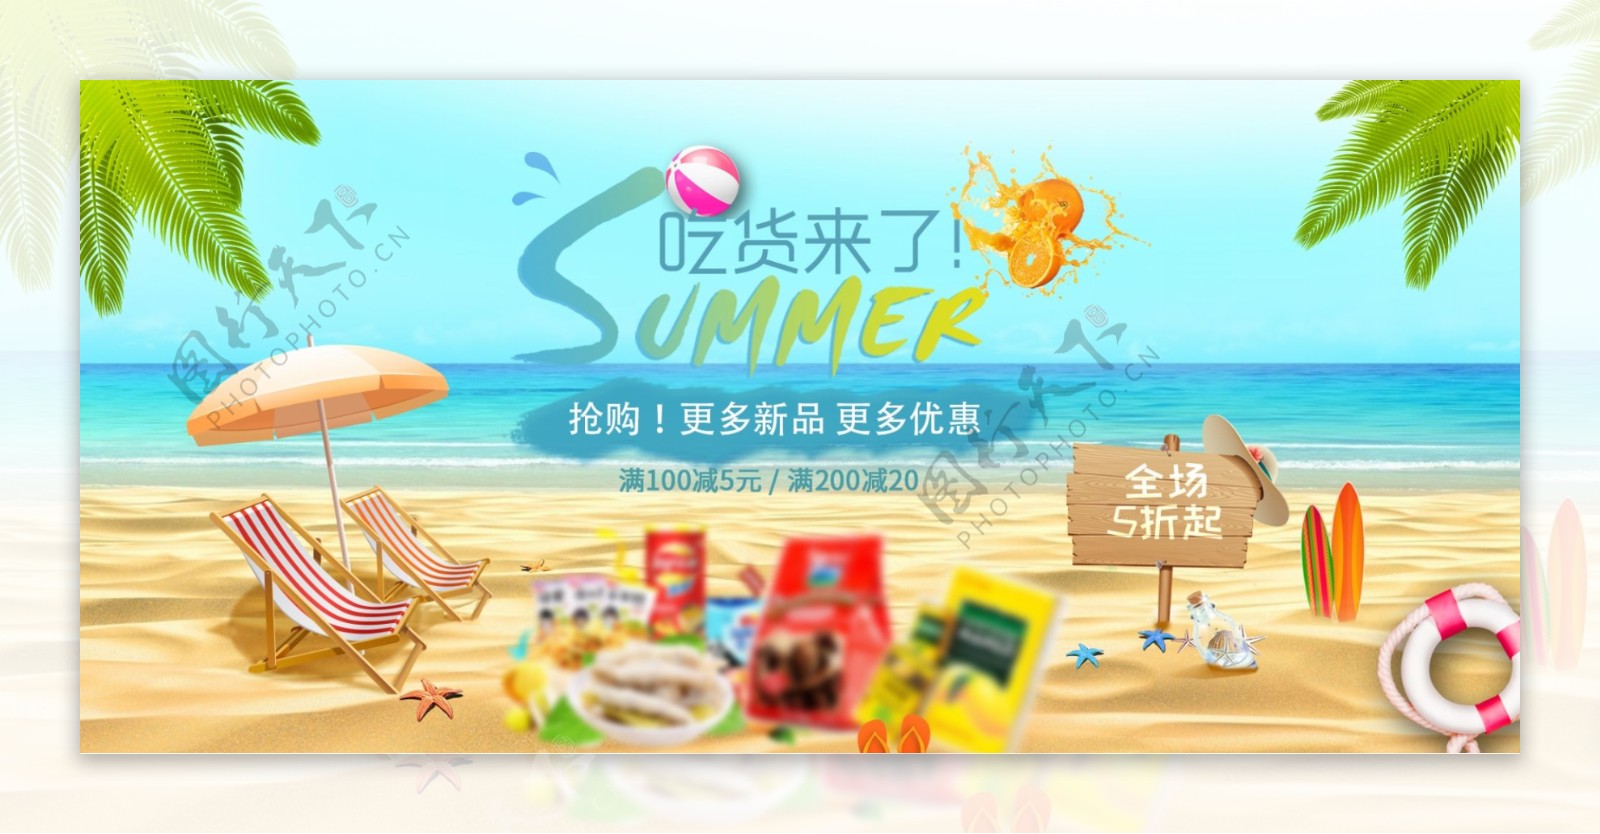 天猫暑假氛围食品美食专栏海报